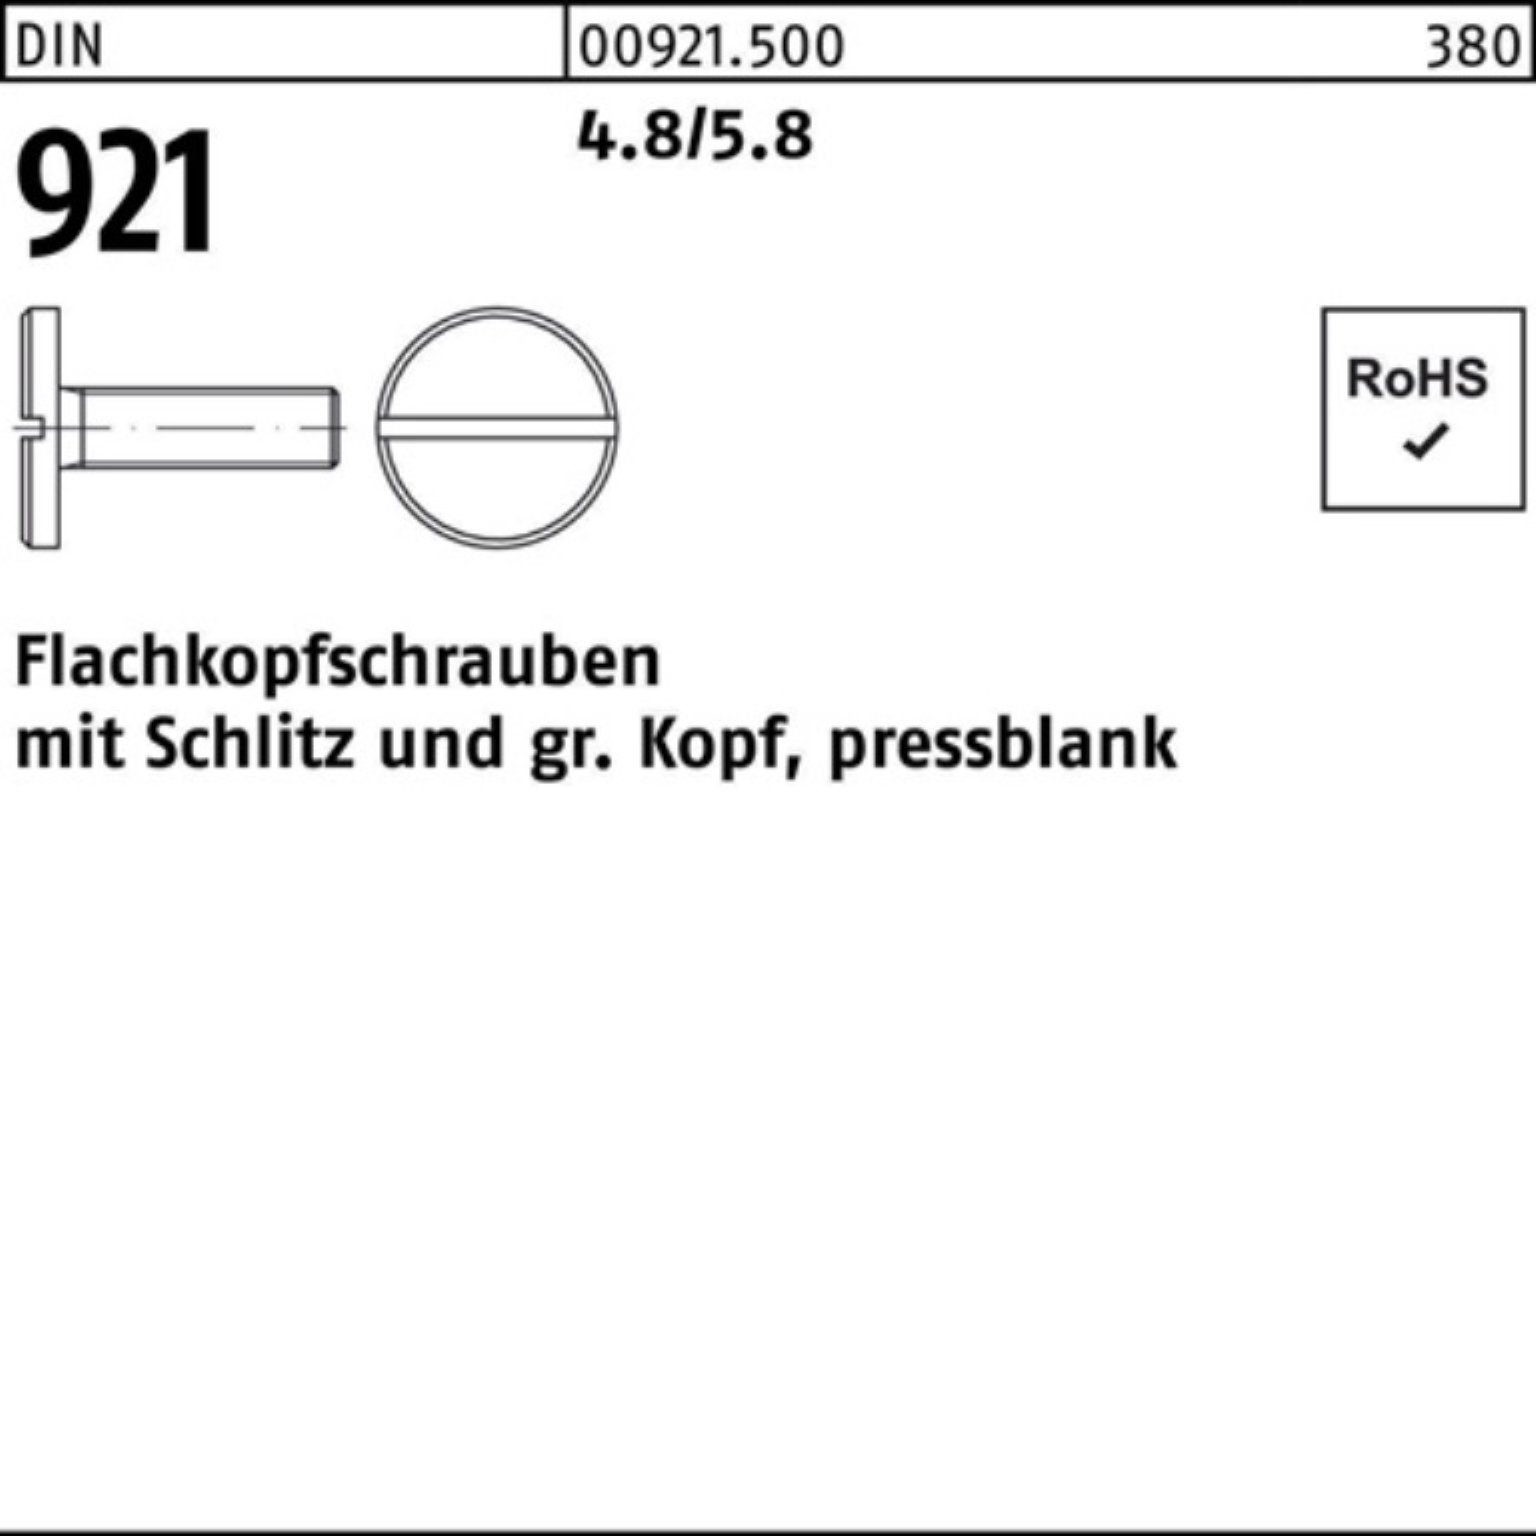 Reyher Schraube 100er Pack 921 Schlitz 100 4.8/5.8 6 Flachkopfschraube DIN Stück M4x